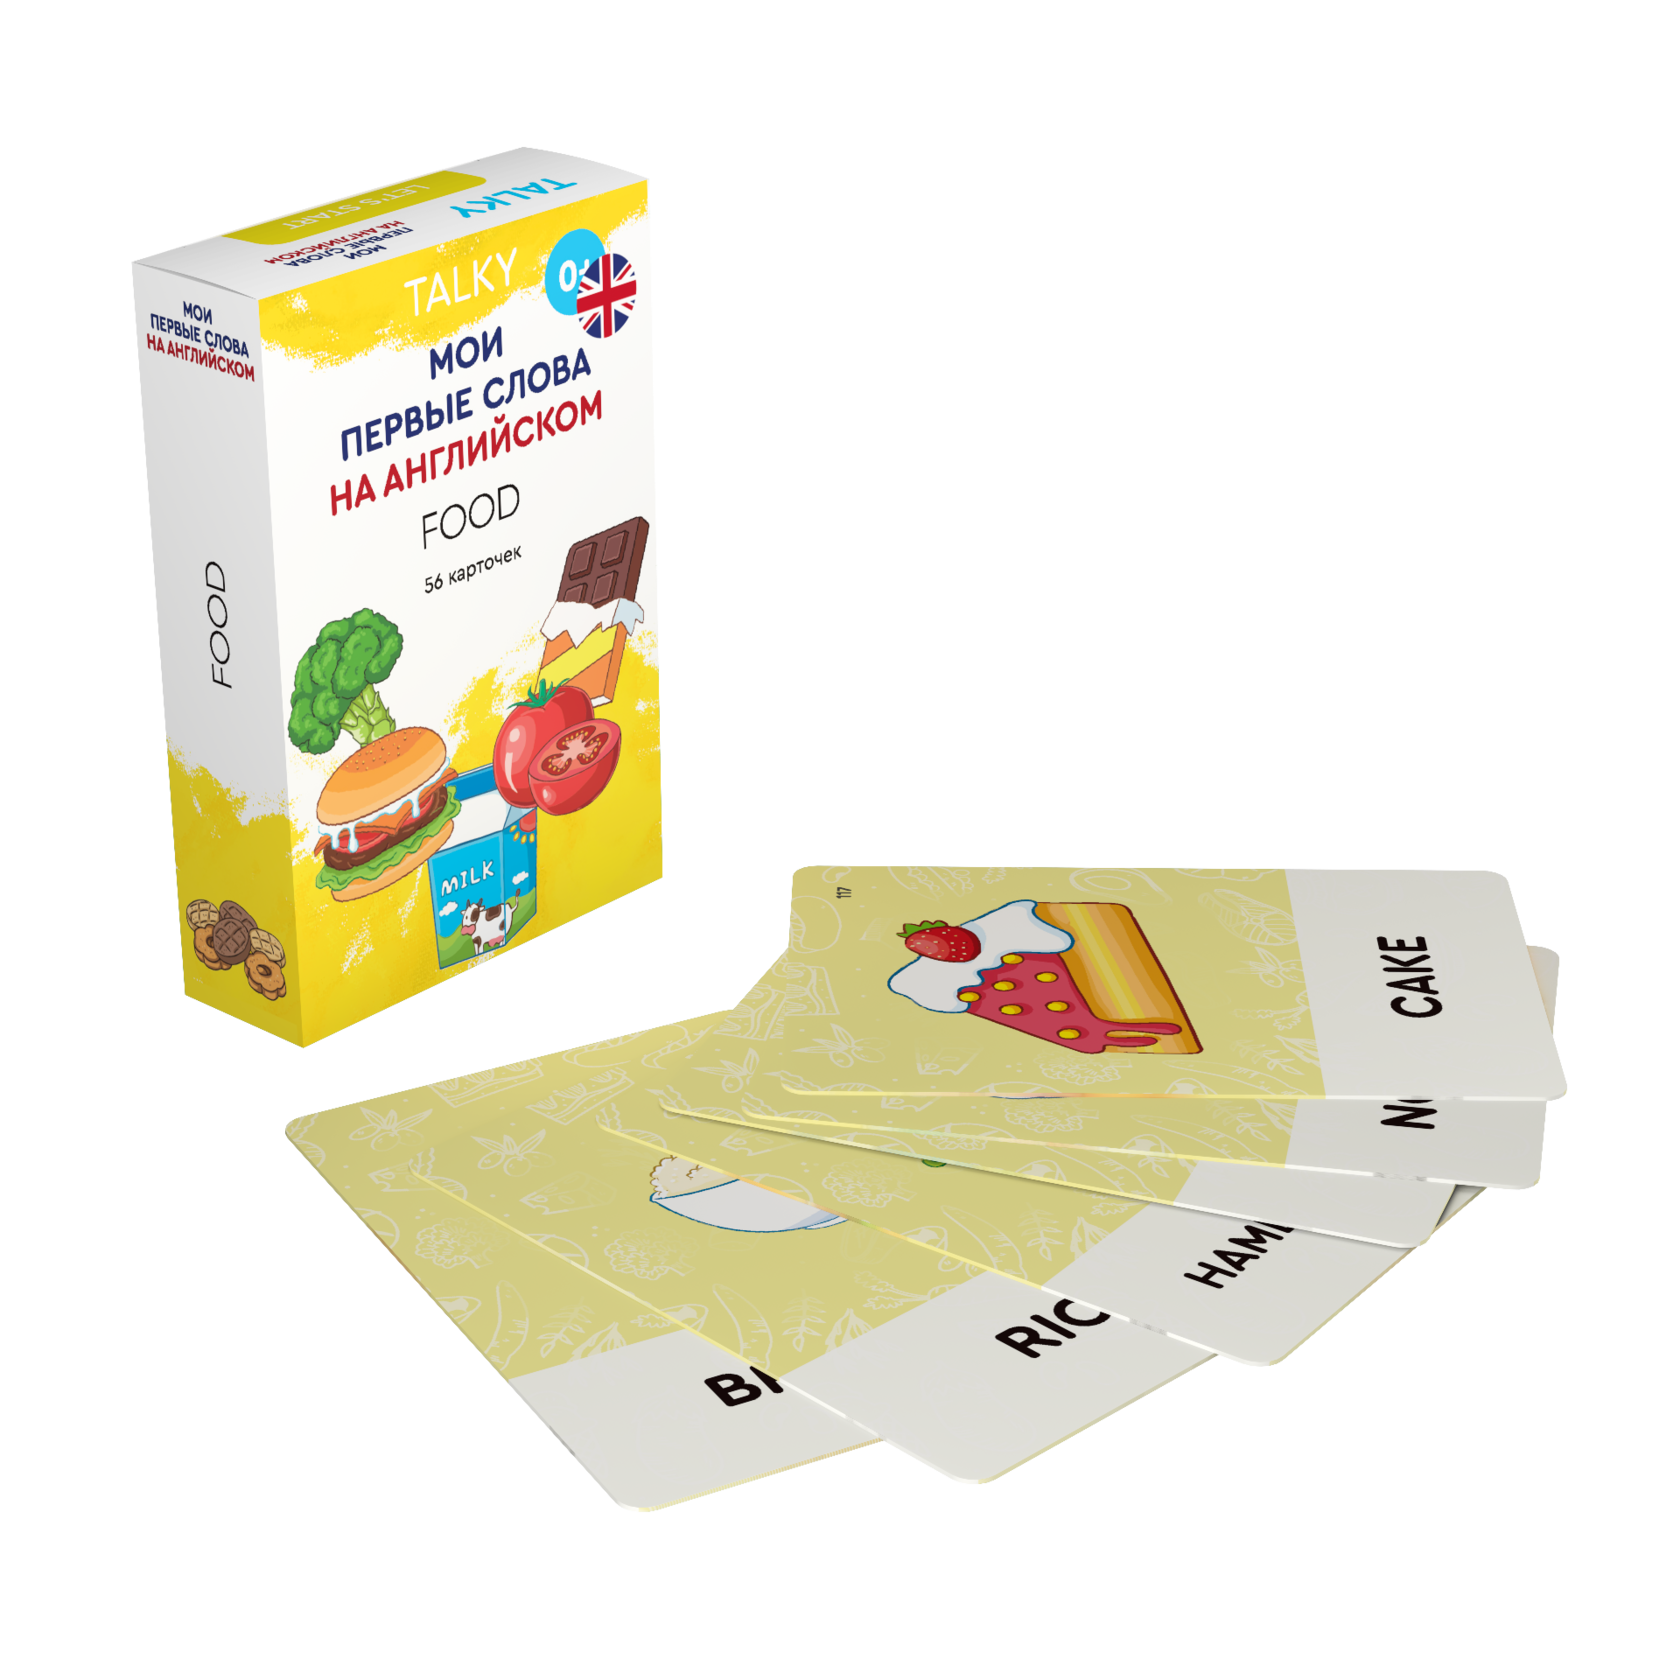 Развивающие карточки для детей LUMICUBE для TALKY, на англ. языке, еда, 56шт. KDTKE02-FOOD